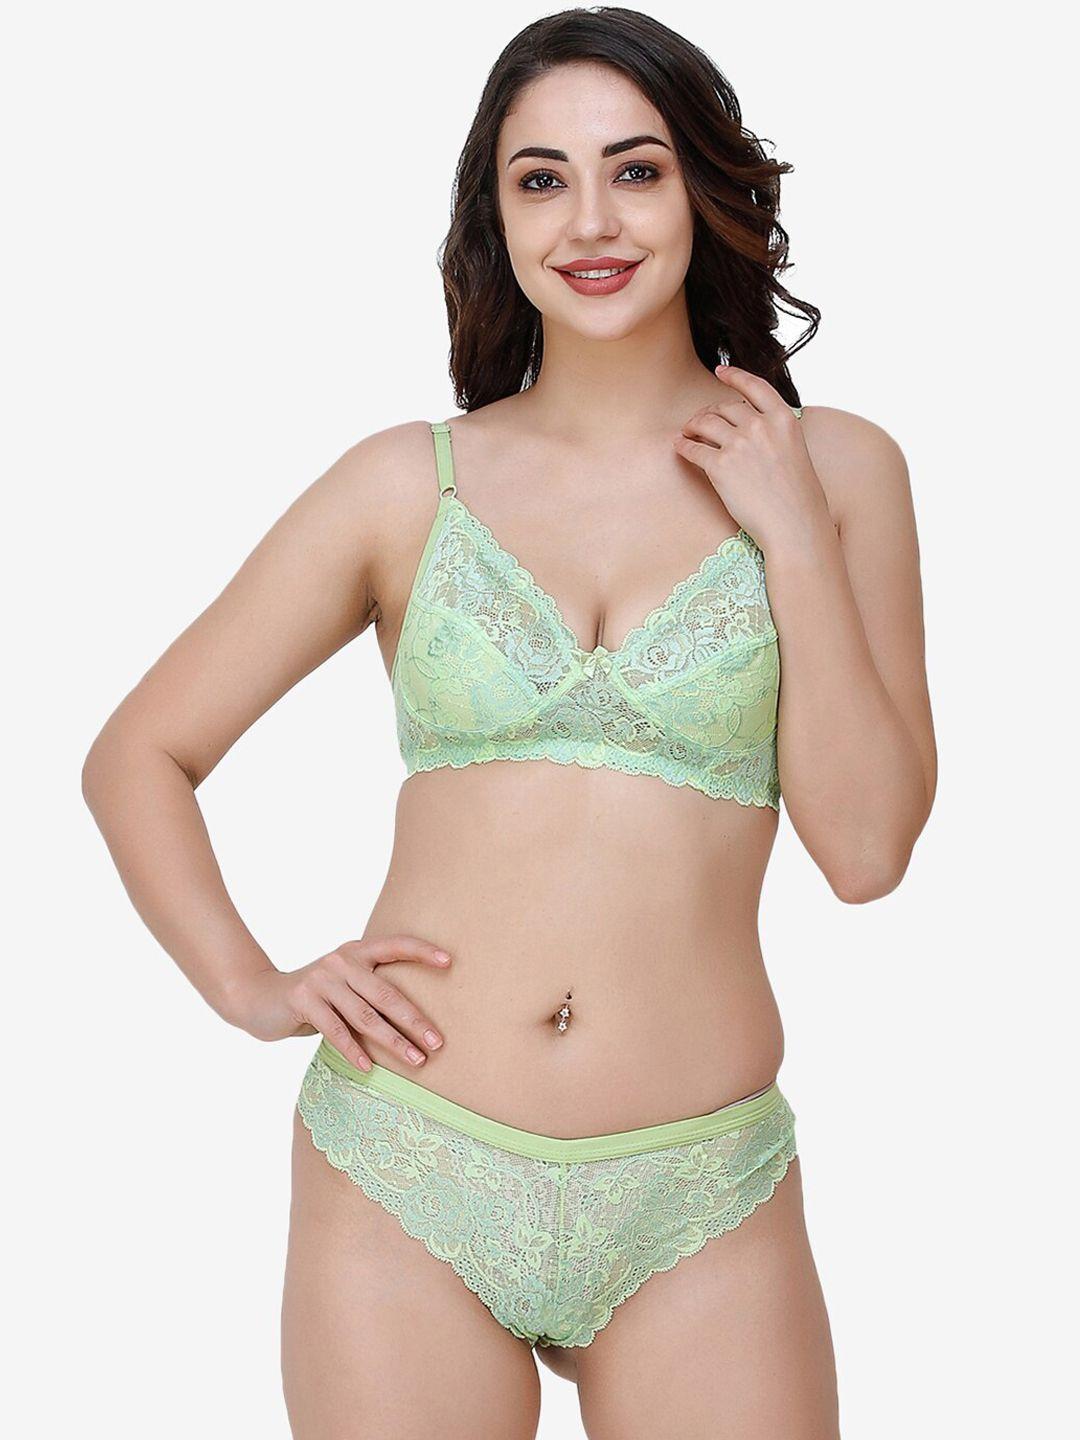 docare women green self-design lace cotton lingerie set